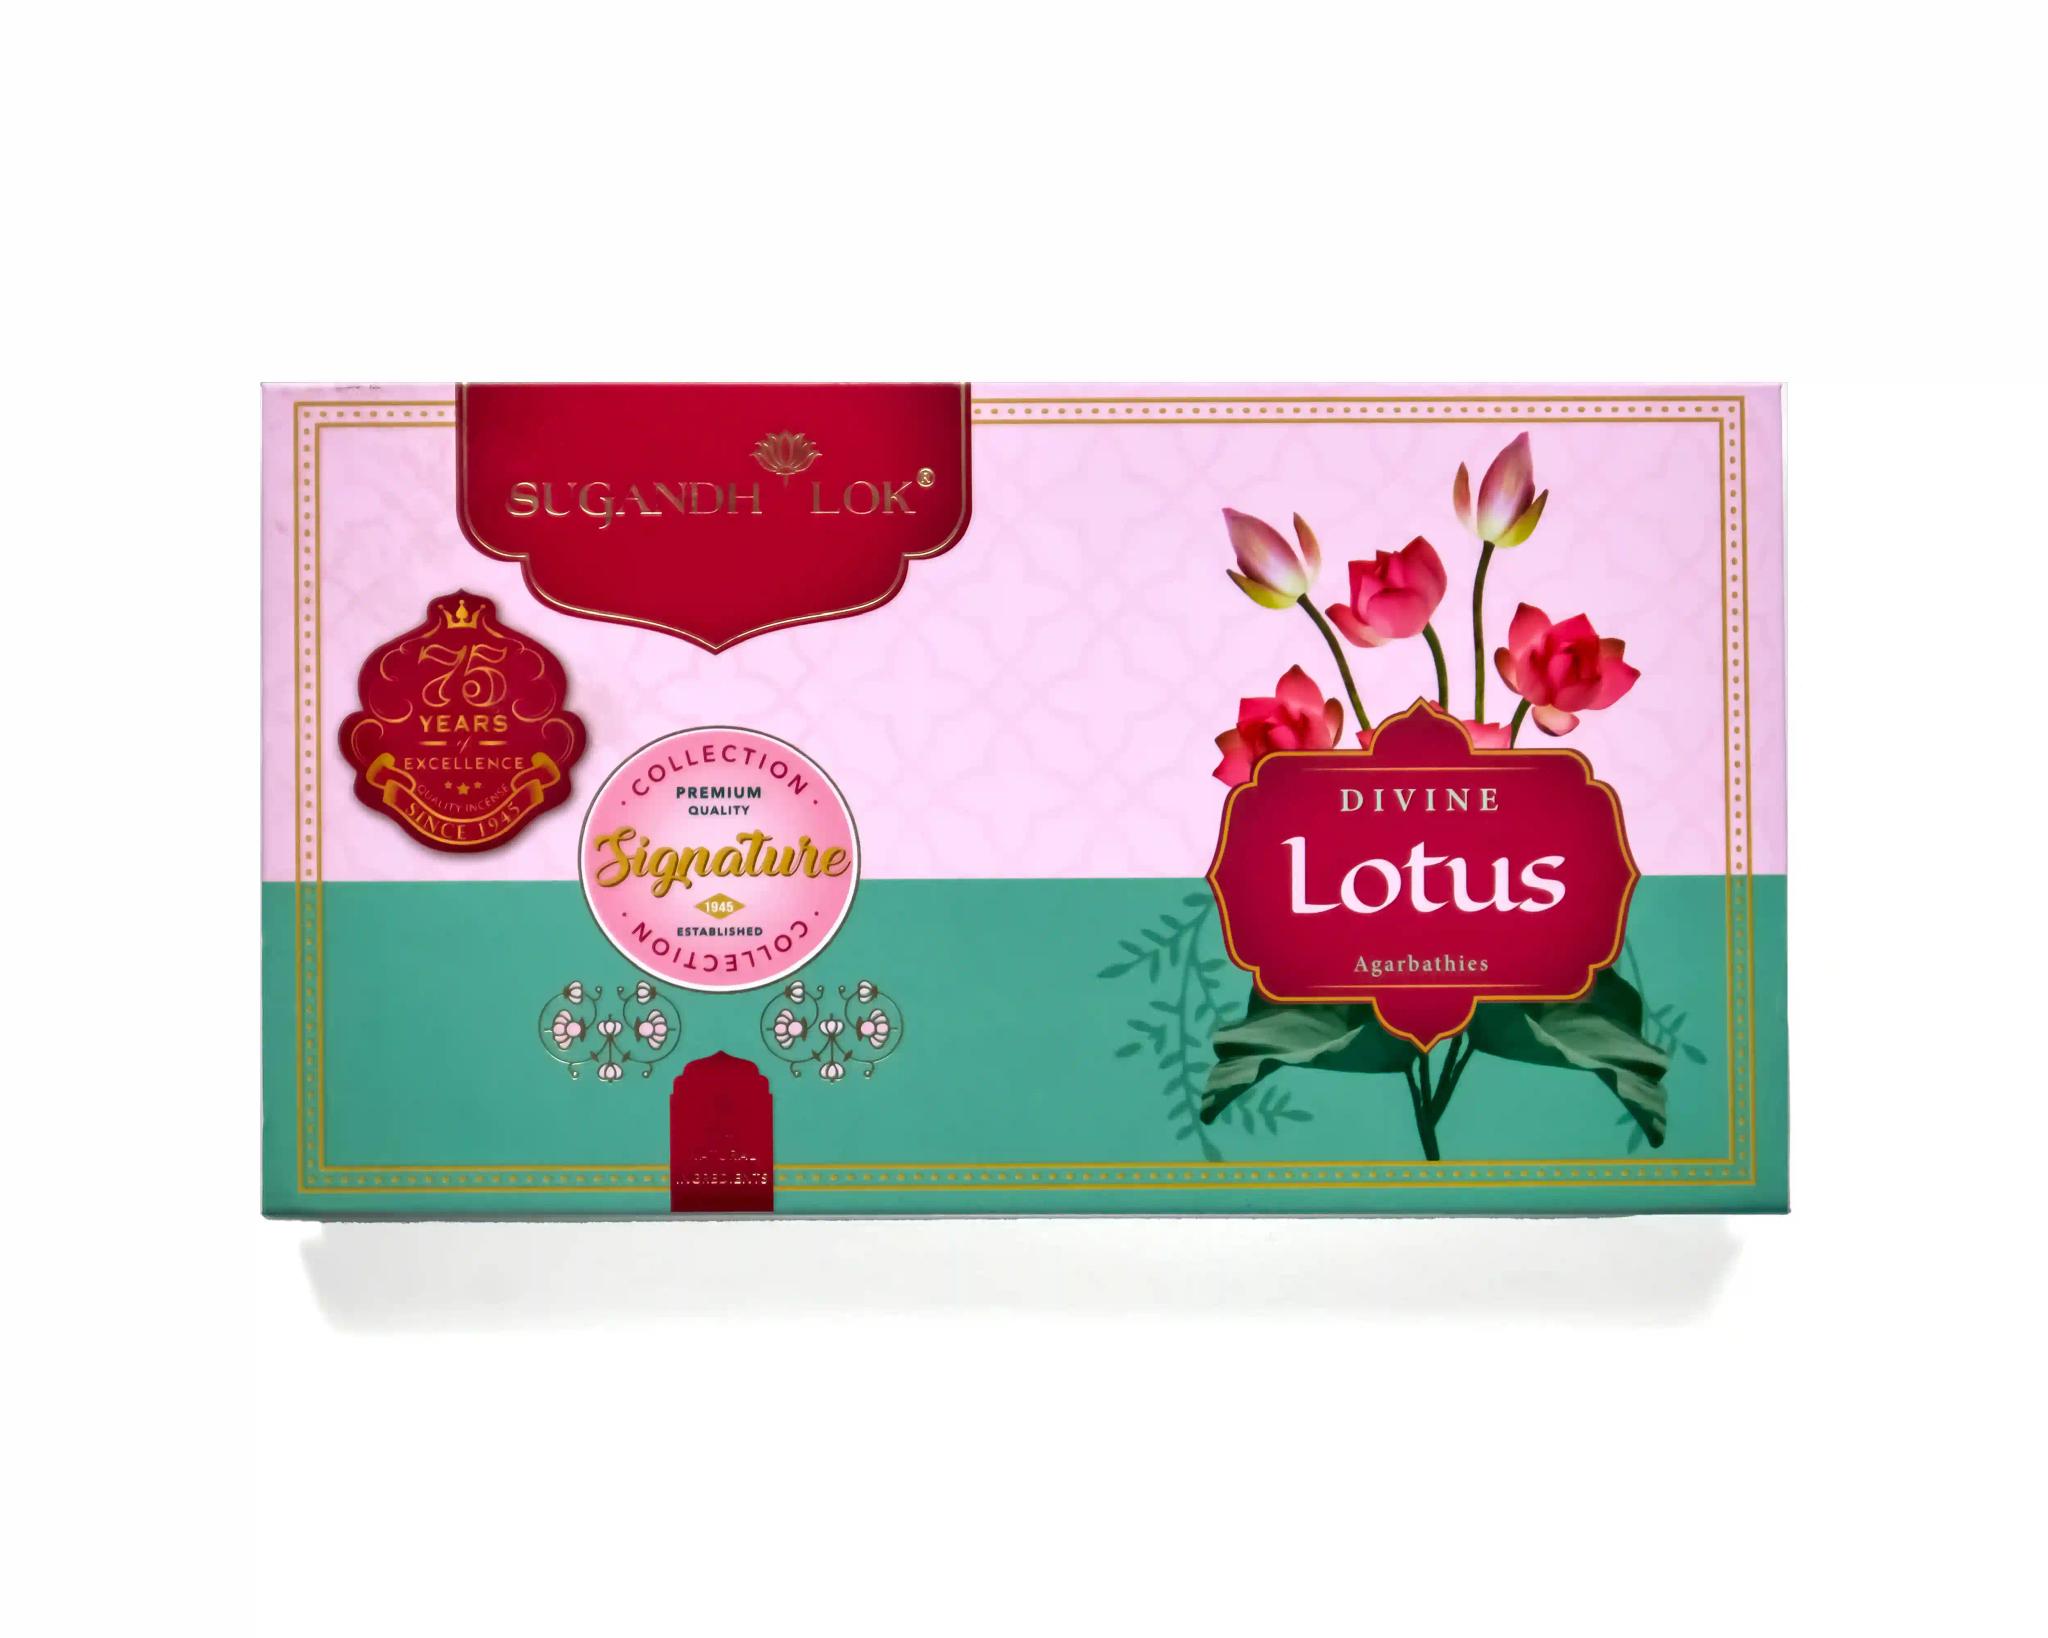 Signature Collection Divine Lotus Premium Agarbathies